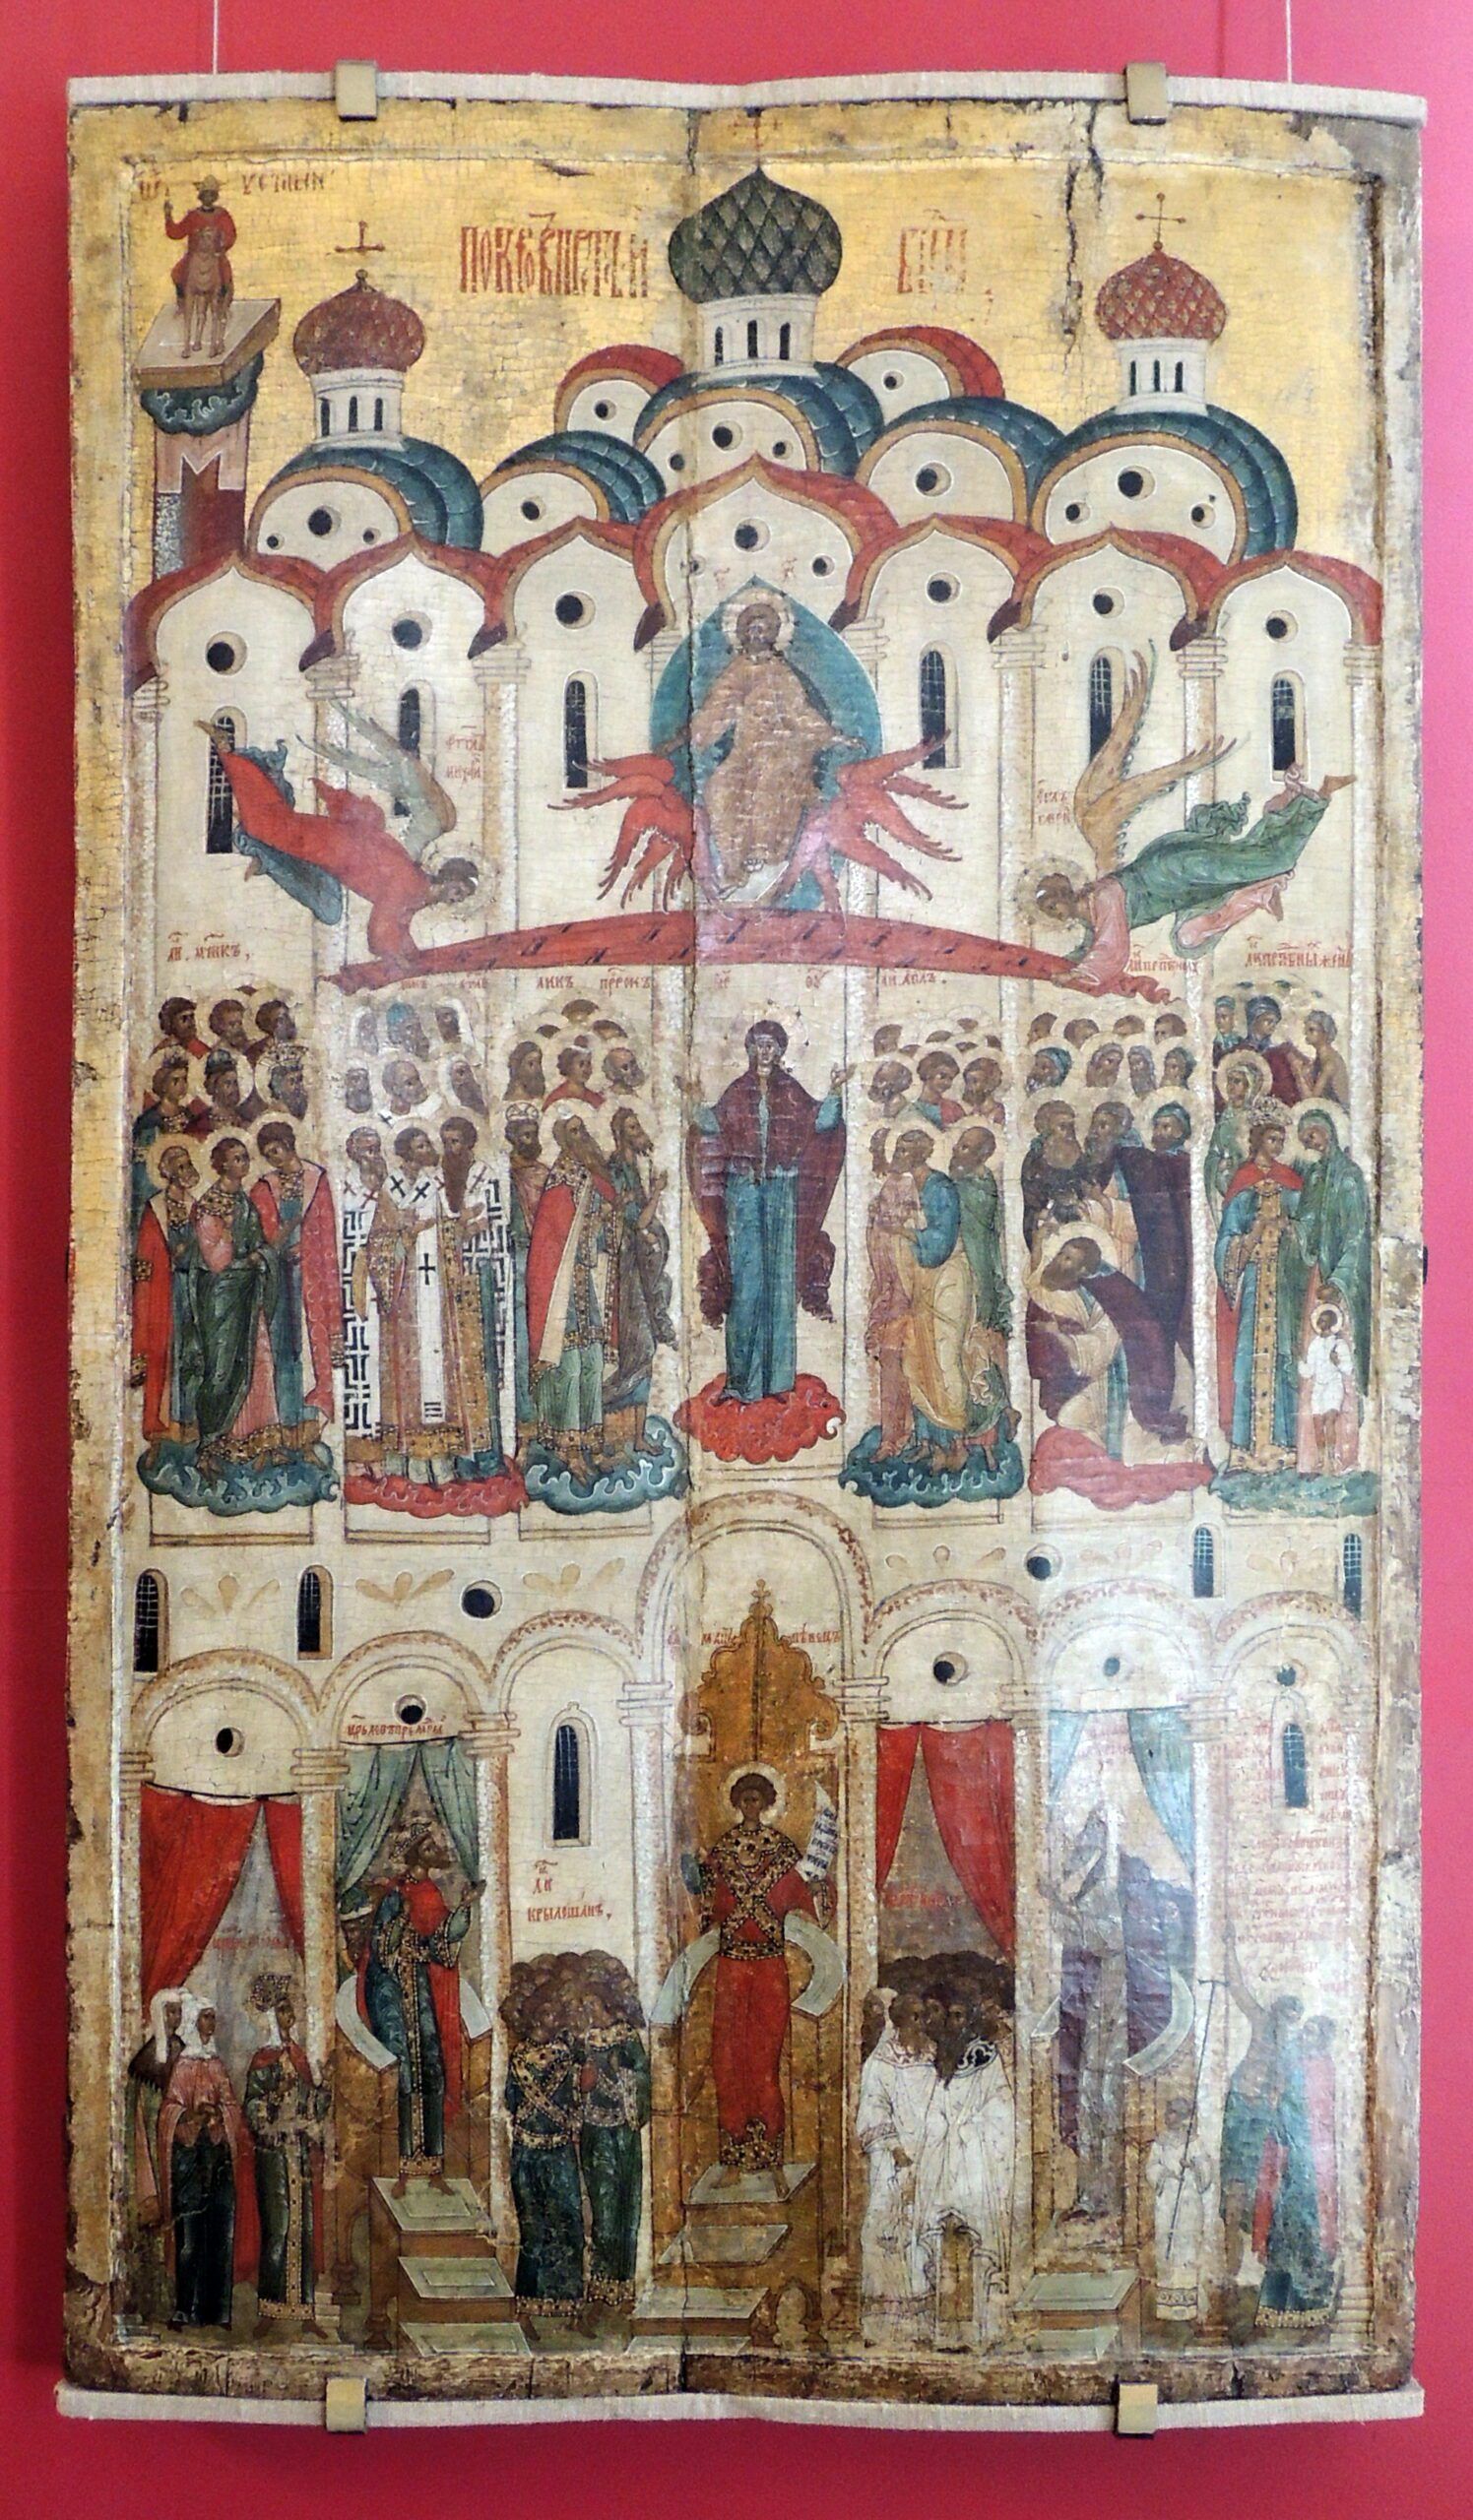 Jumalaema kaitsmise ja eestpalve ikoon Novgorodist 16. sajandist